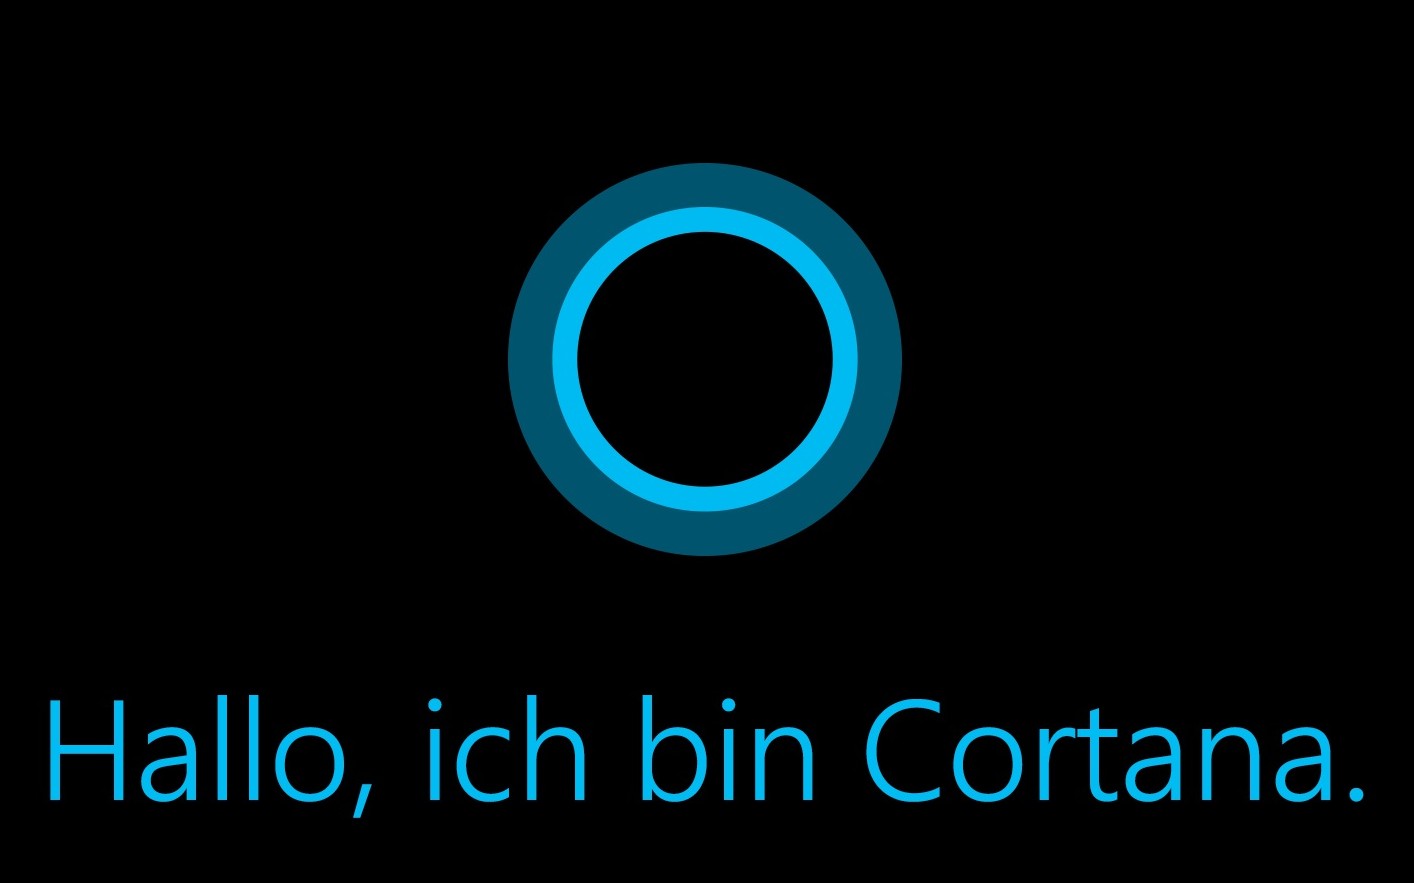 Cortana für Microsoft Phone ist wie Google Now mit KI ausgestattet